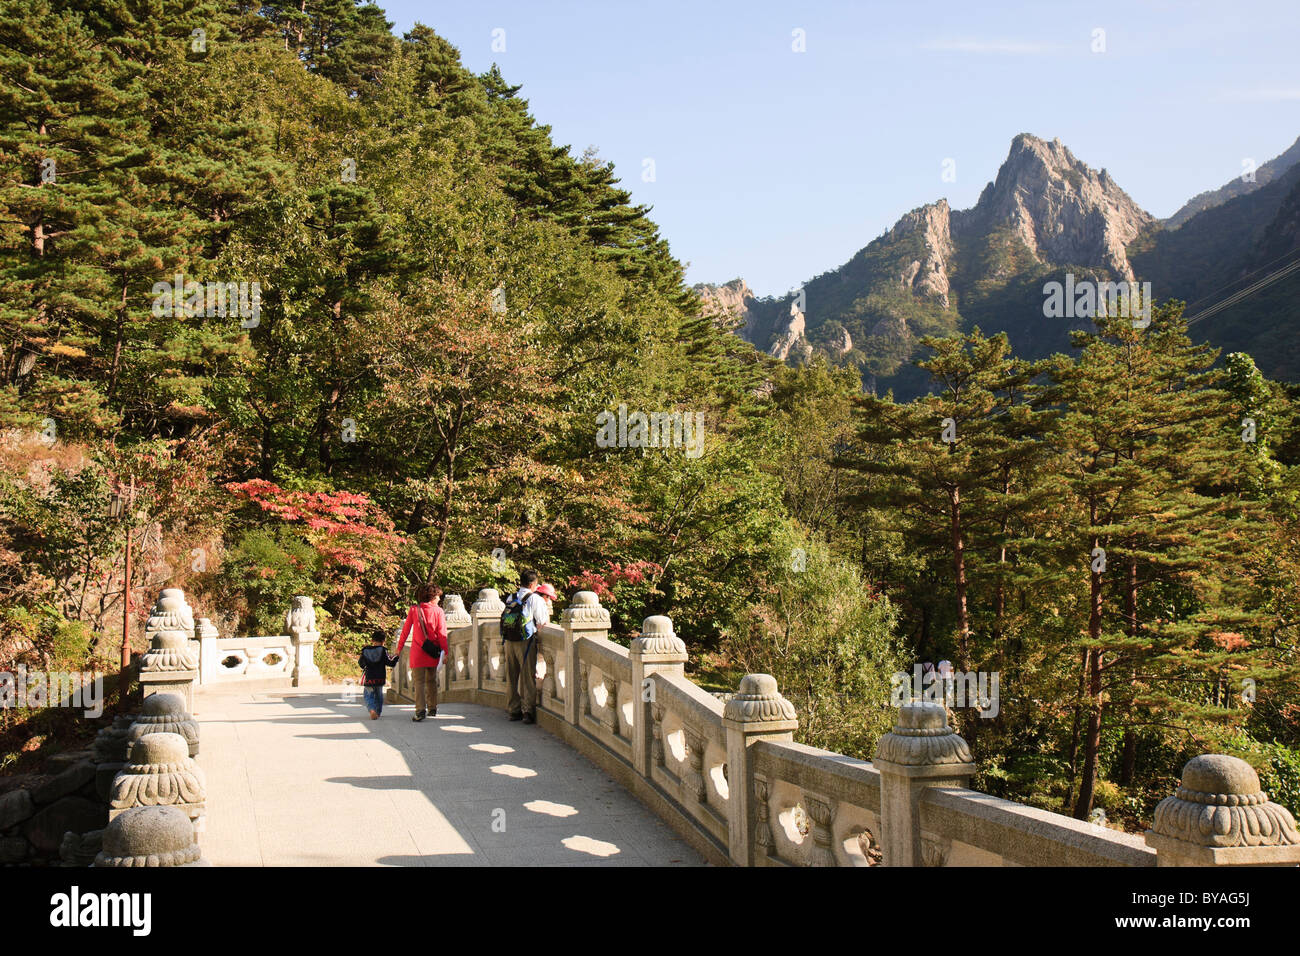 Nojeokbong Nojeok et pont (PIC), le Parc National de Seoraksan, Corée du Sud Banque D'Images